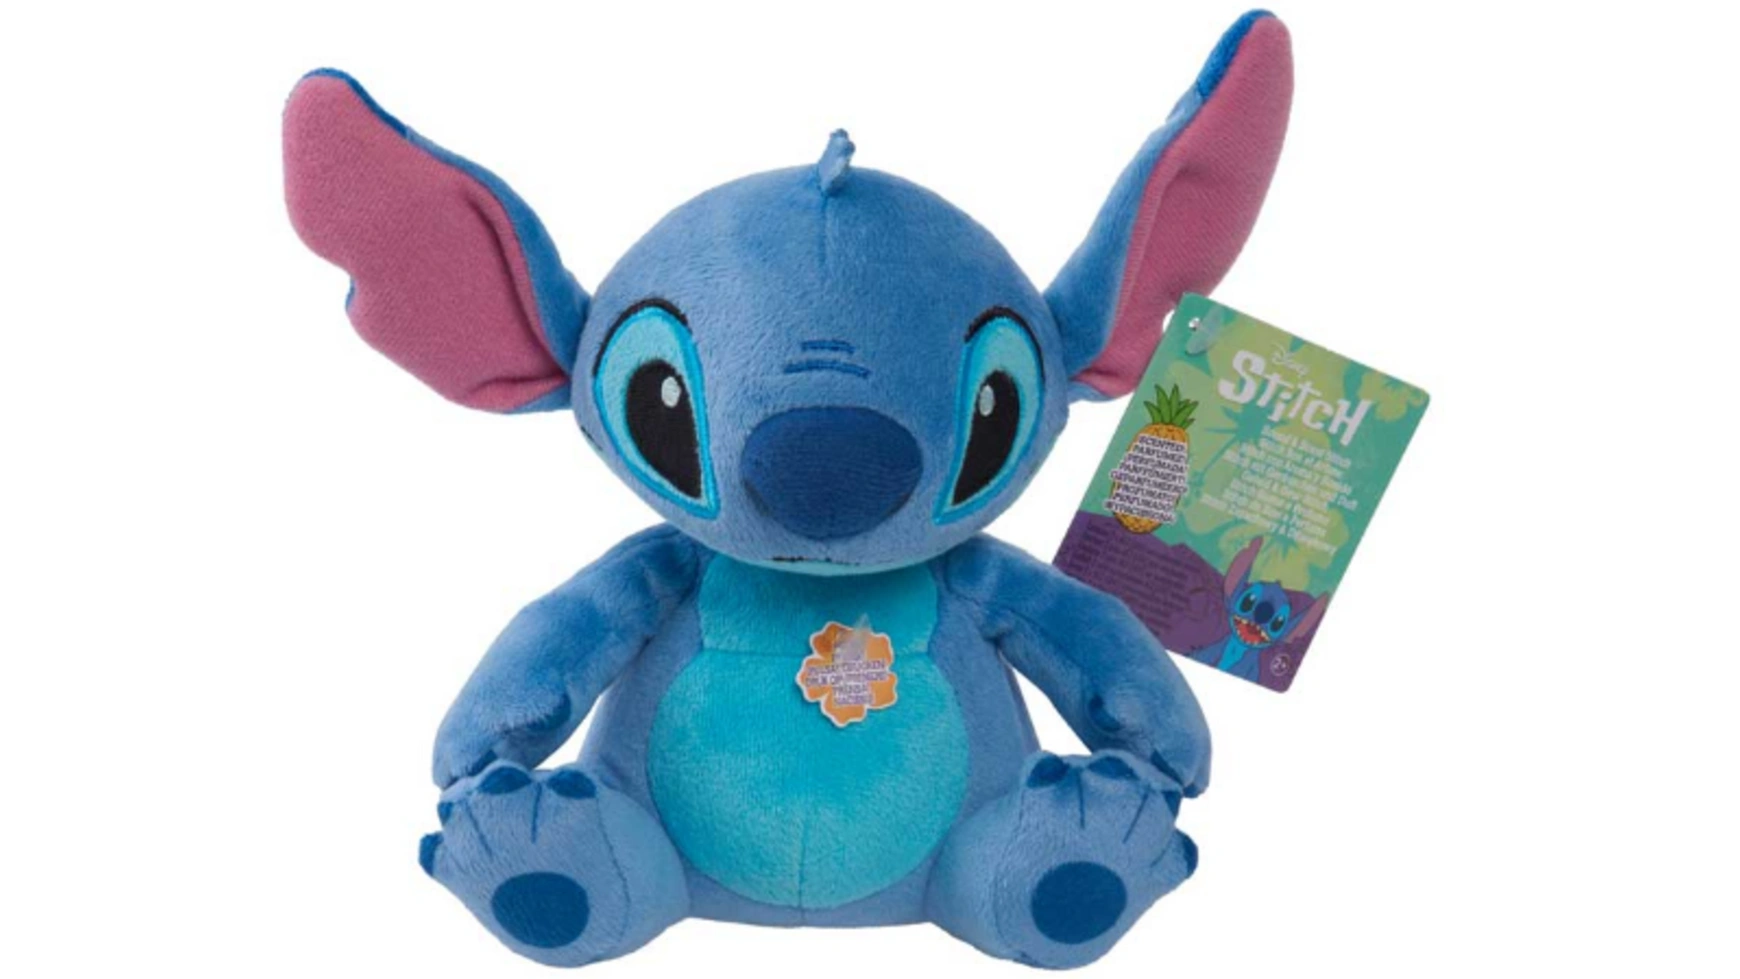 Disney Плюшевая игрушка Stitch Sound 15 см disney store япония 2020 плюшевая игрушка мулан плюшевая кукла 18 см